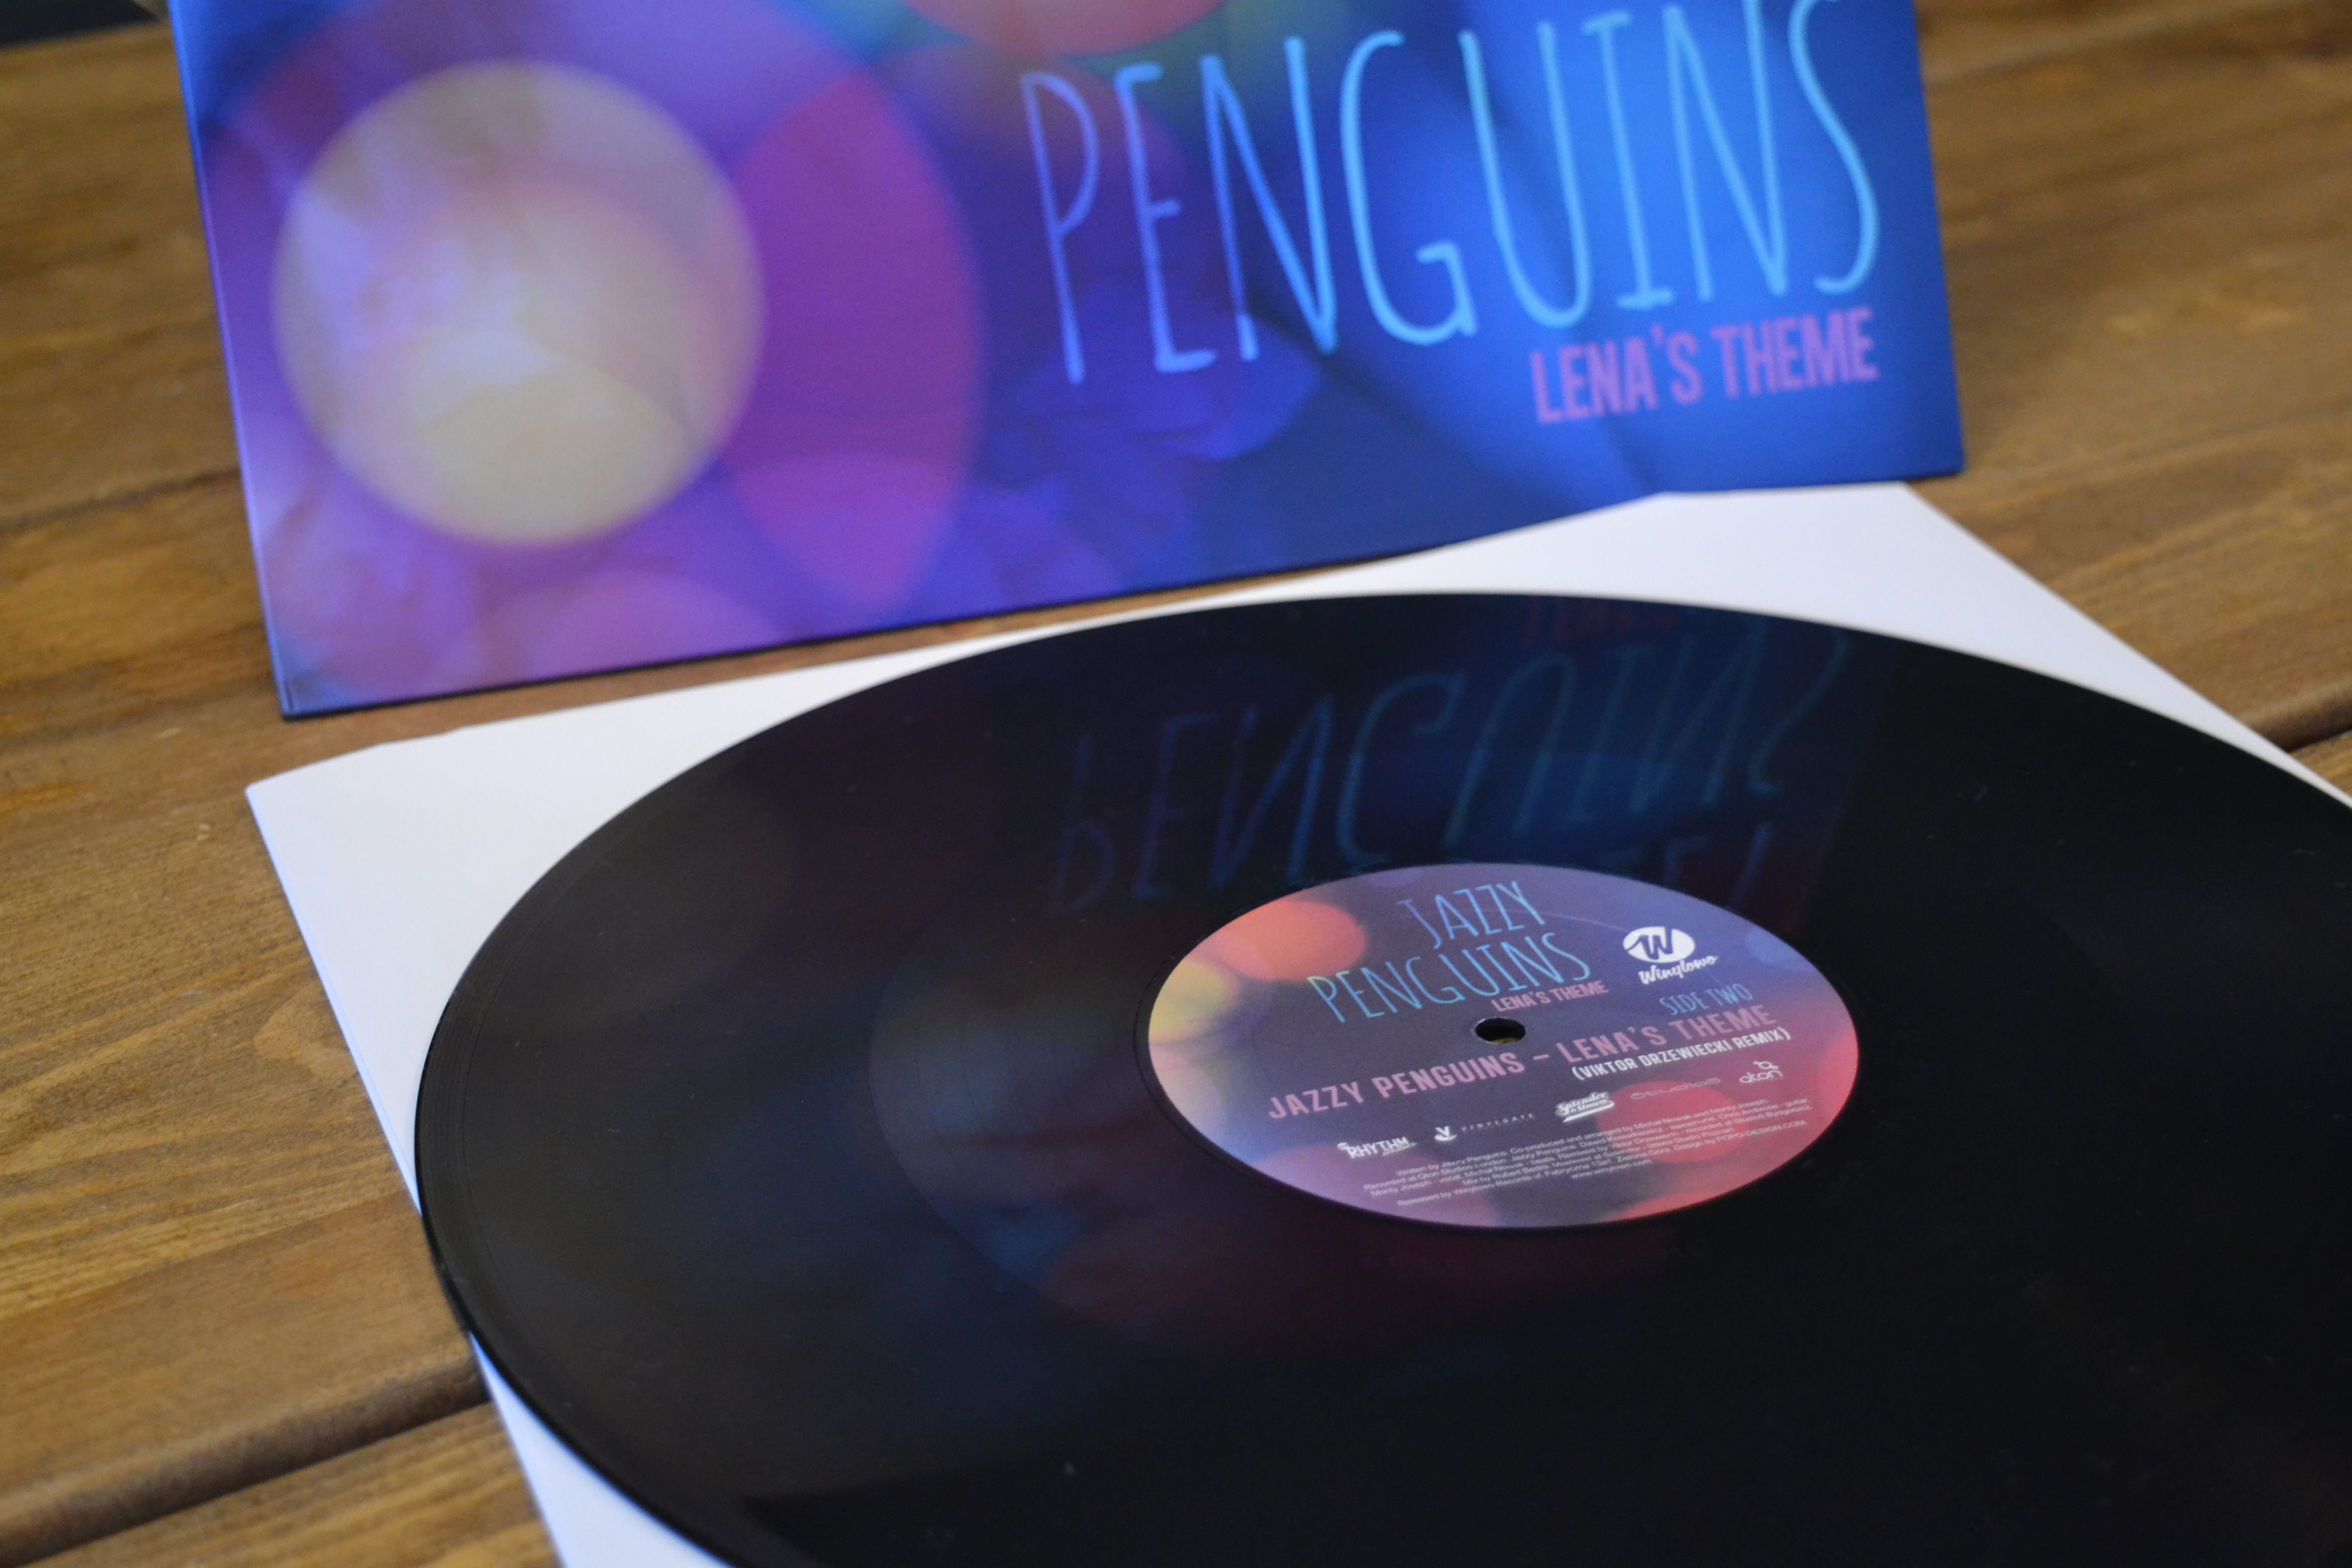 jazzy-penguins-lenas-theme-2